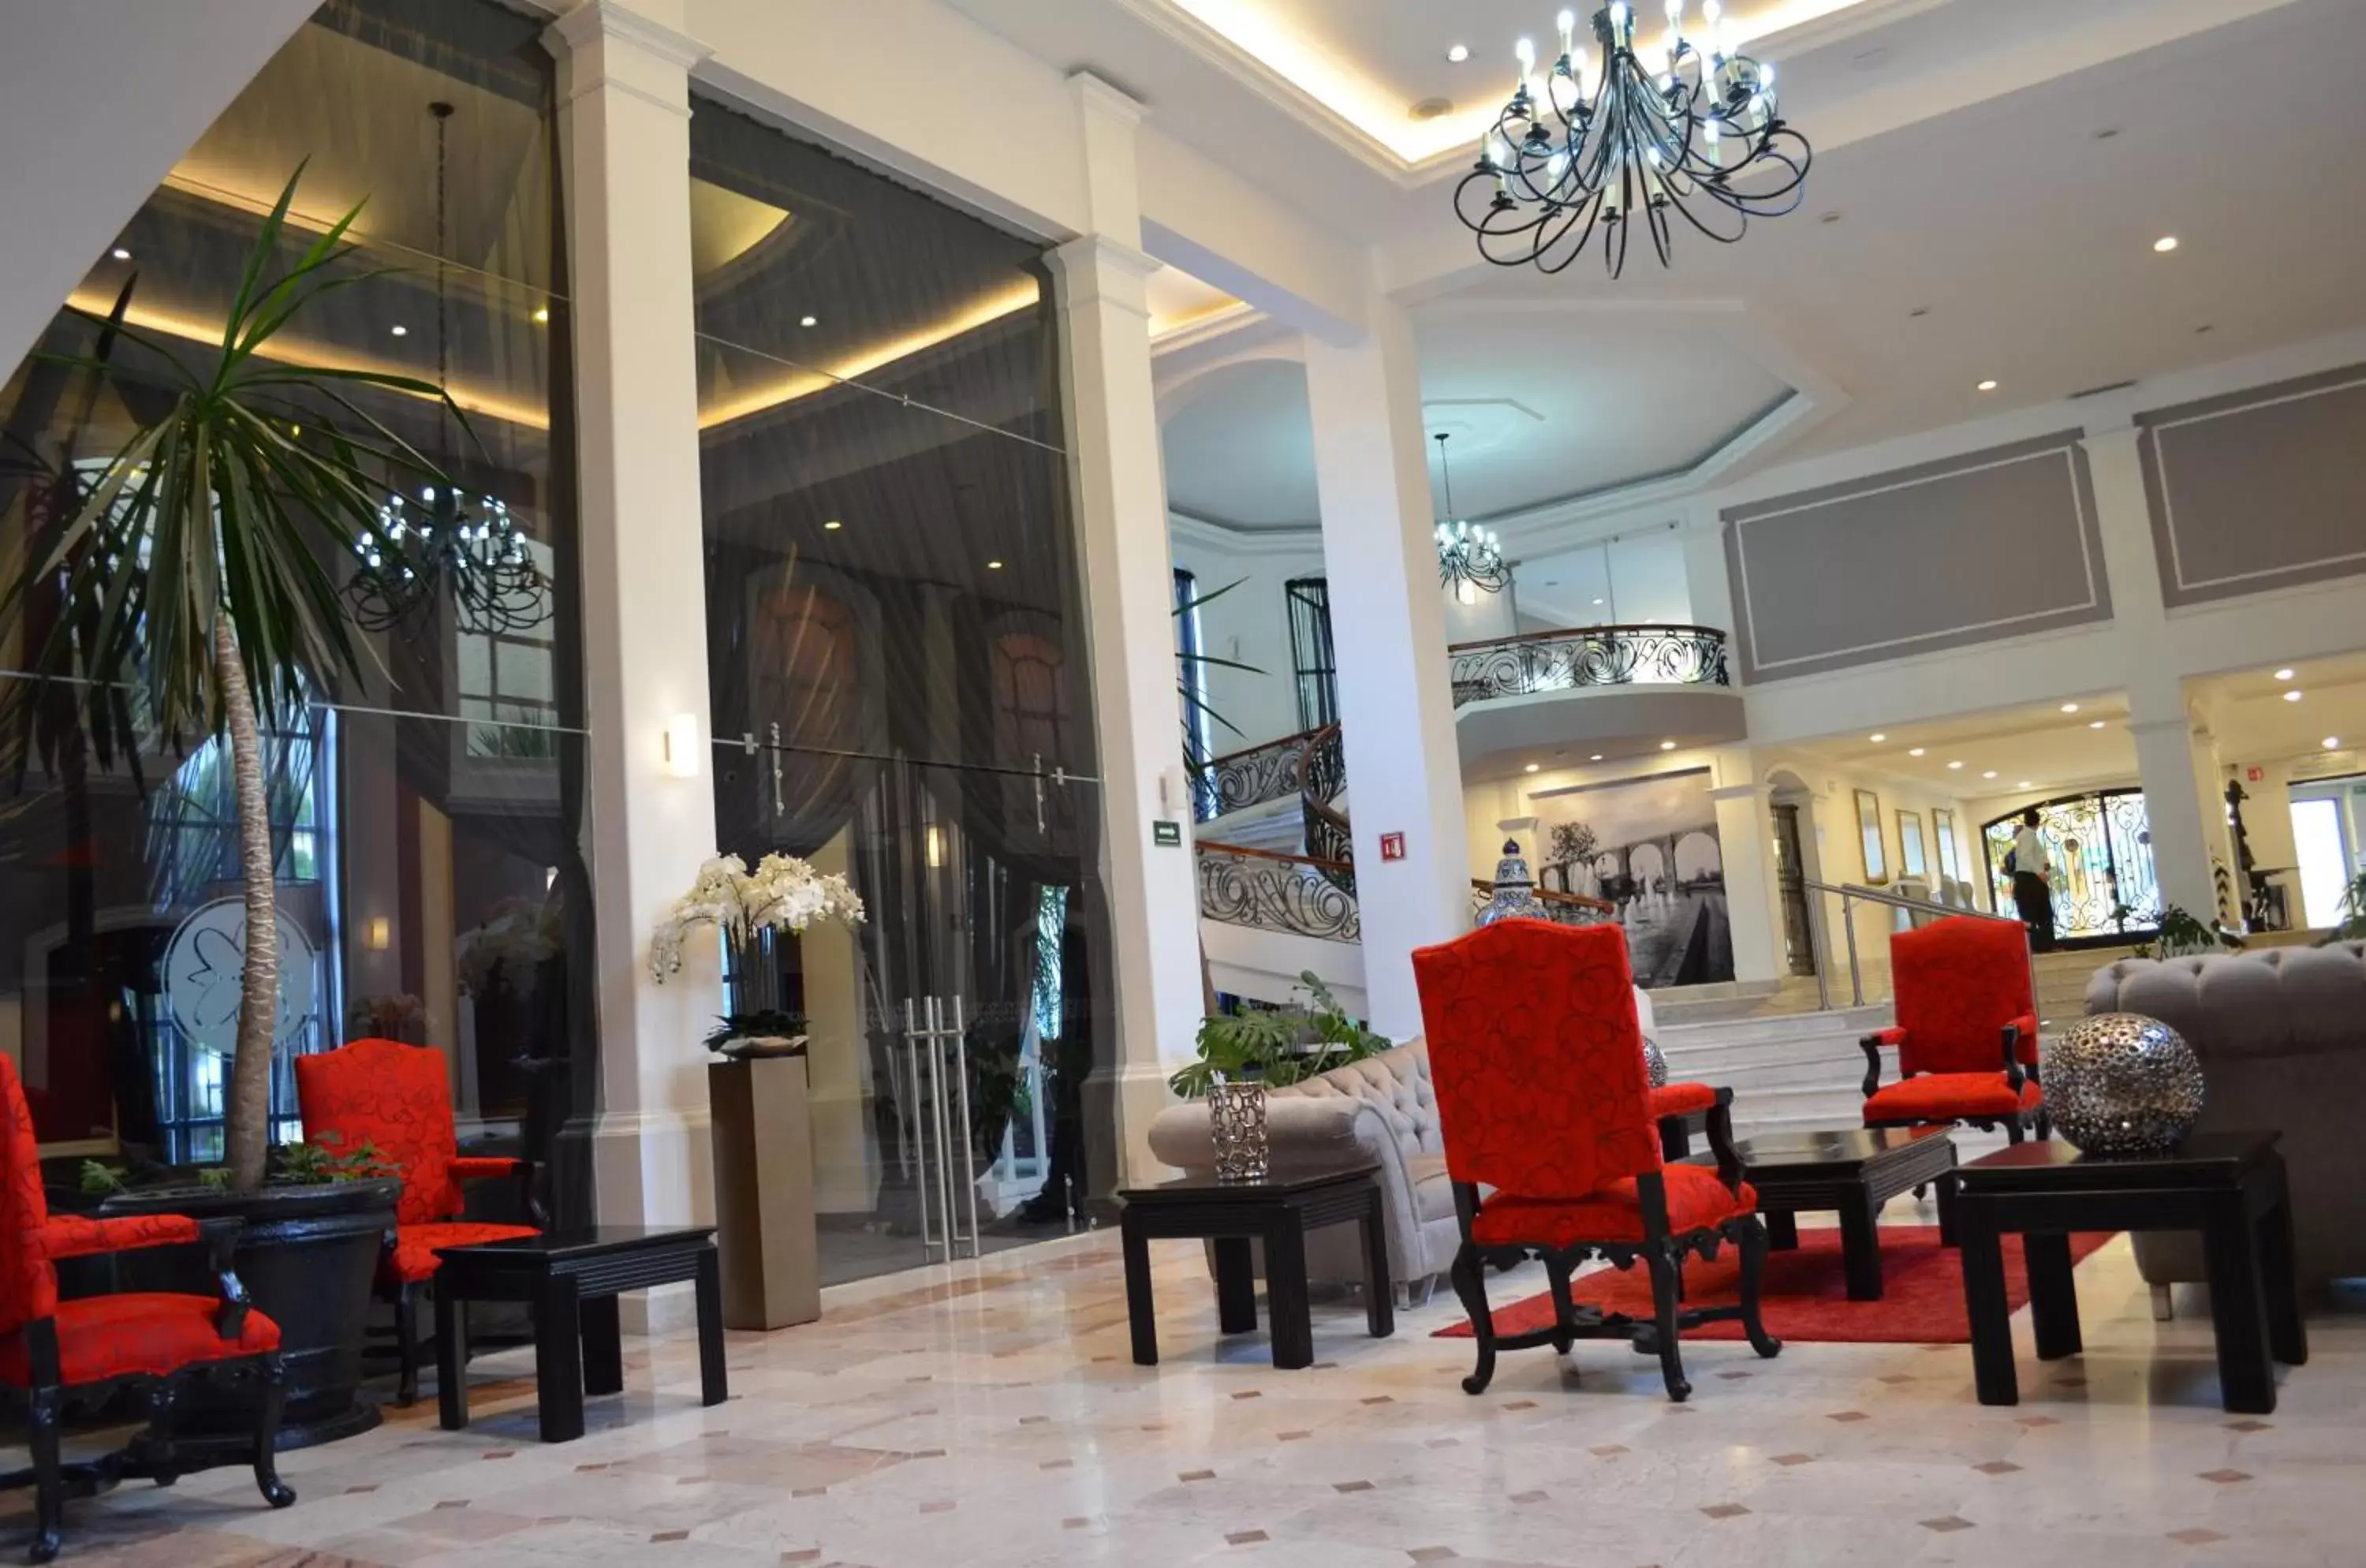 Lobby or reception, Lobby/Reception in Plaza Camelinas Hotel